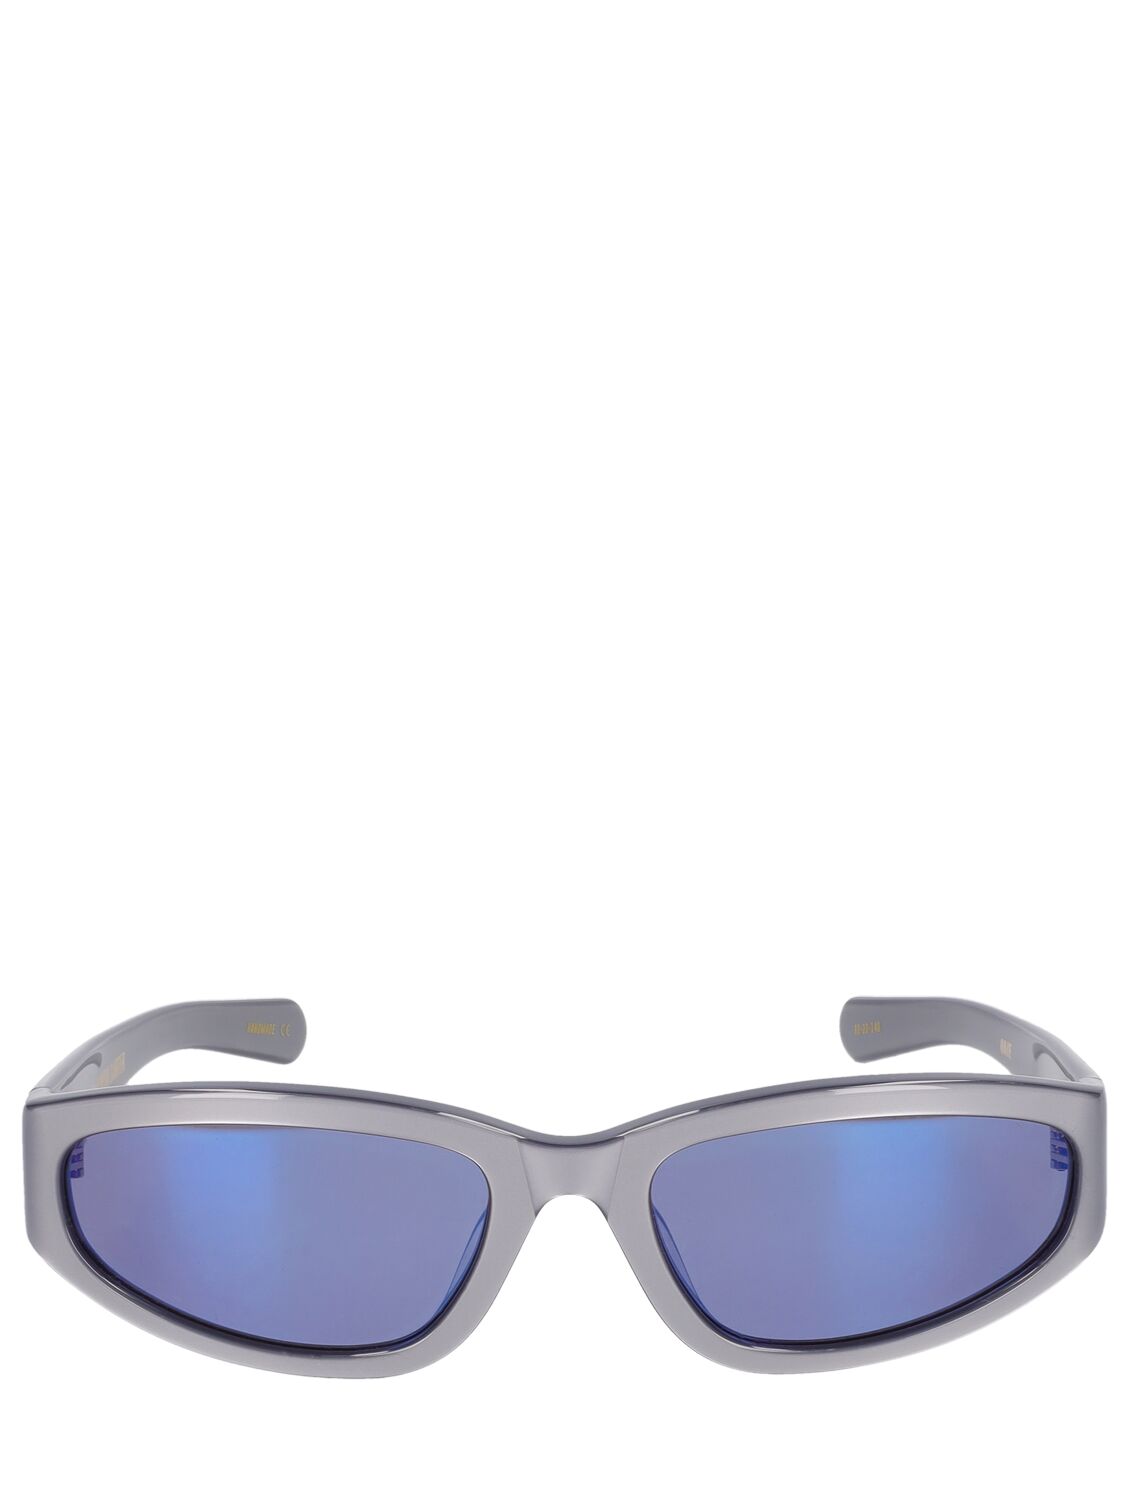 Flatlist Eyewear Veneda Carter Daze Sunglasses In Blue